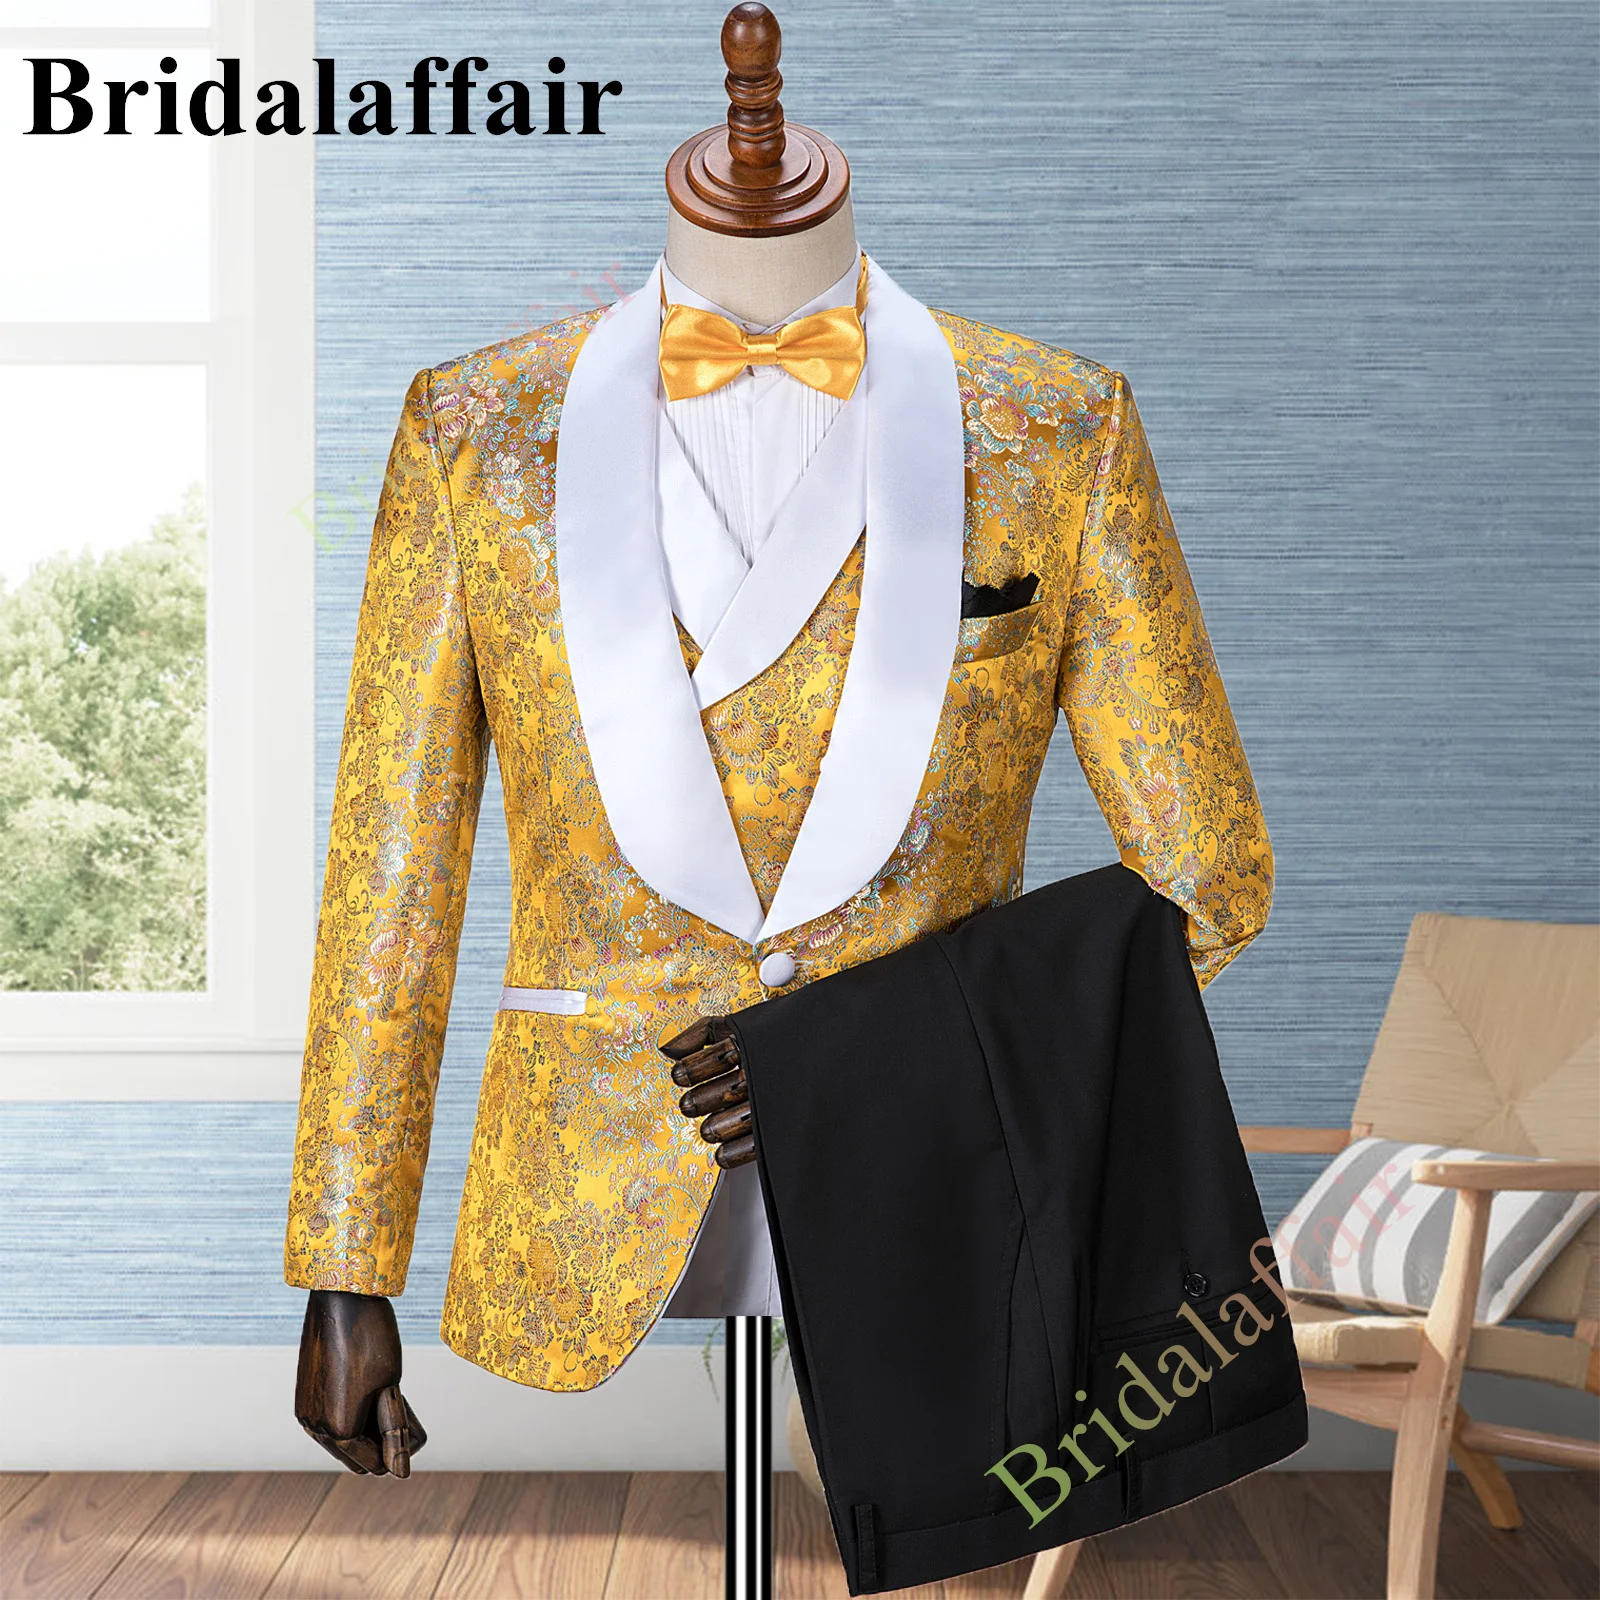 Bridalaffair Men's Gold Suits Jacquard Floral Printed Wedding Tuxedo Suit for Men 3pcs Blazer Jacket Vest Pant Set Costume Homme